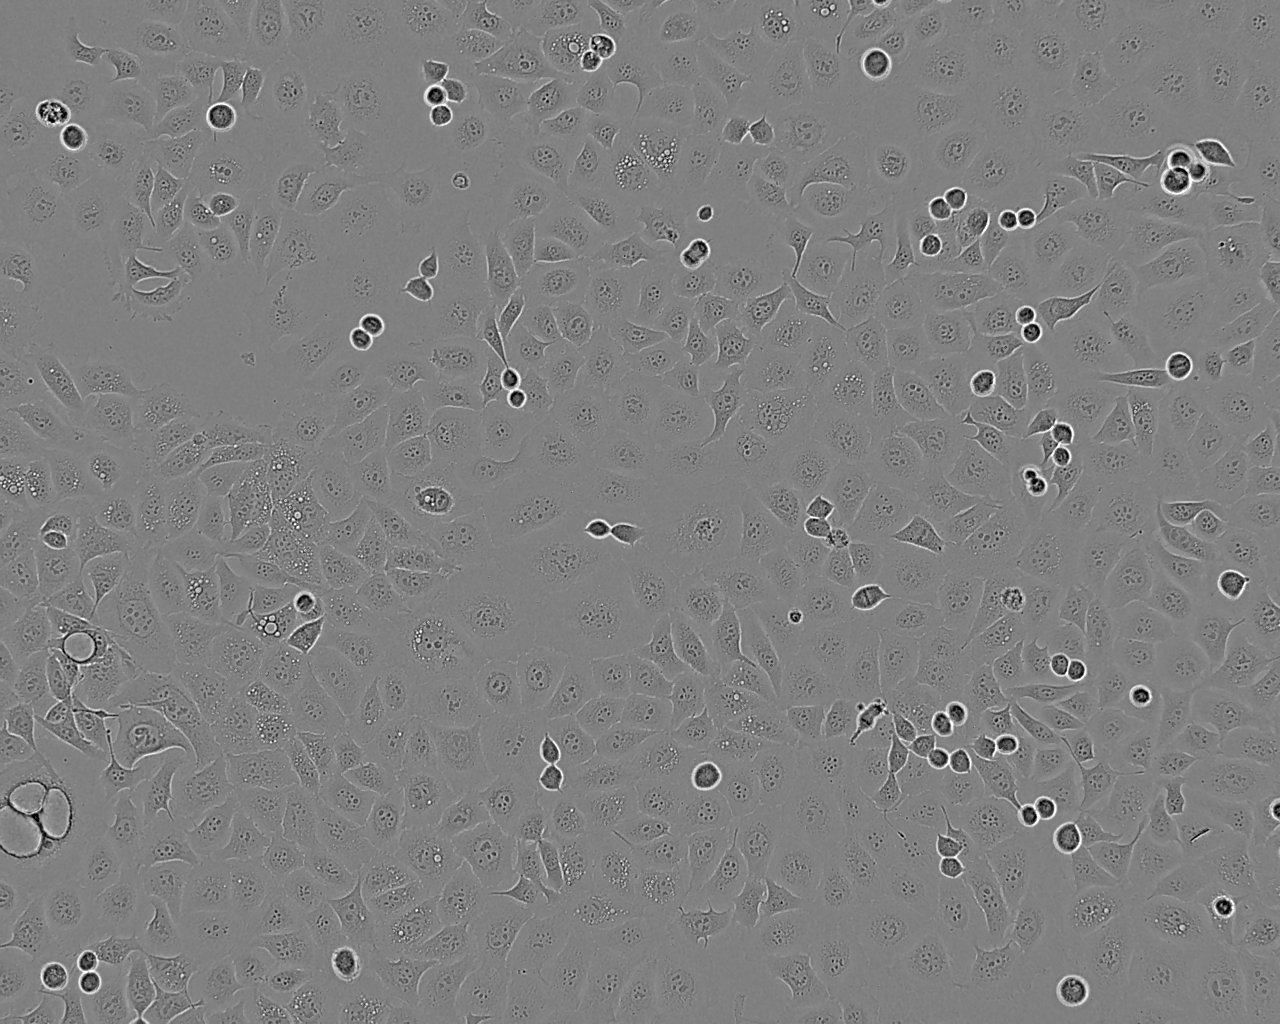 SNU-423 Cells|人肝癌需消化细胞系,SNU-423 Cells